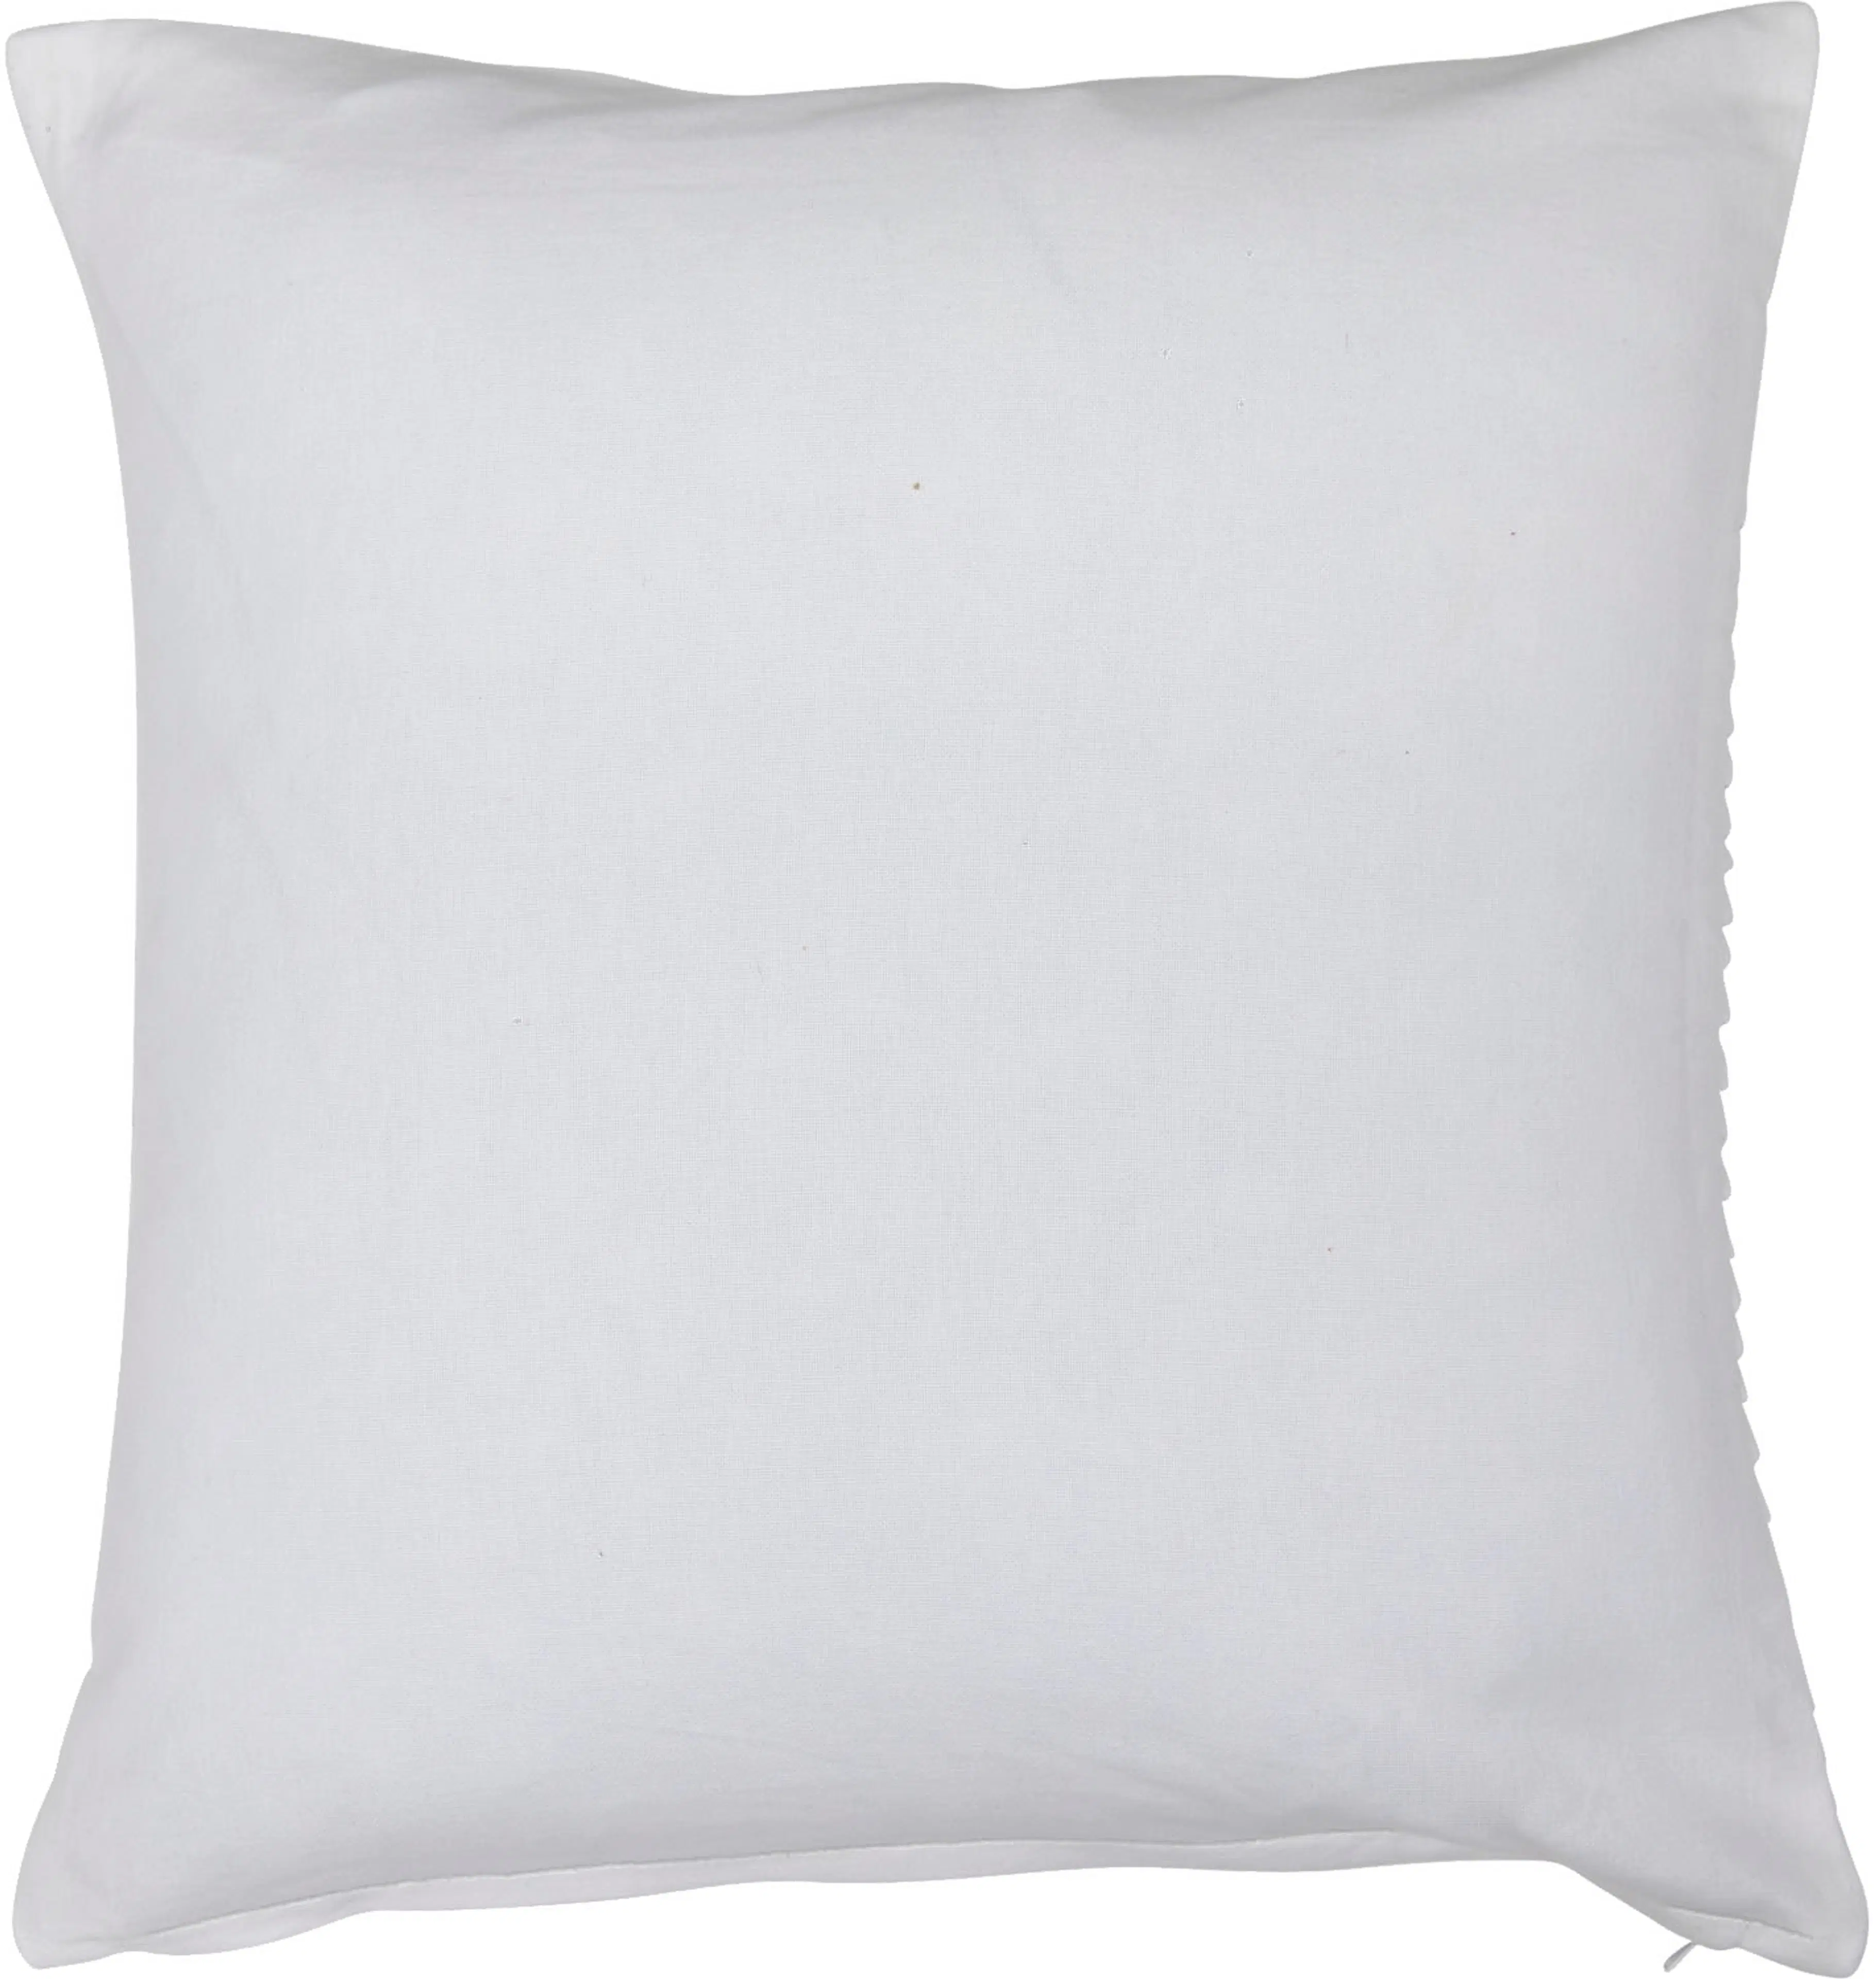 Pentik Laine tyynynpäällinen 45x45 cm, valkoinen